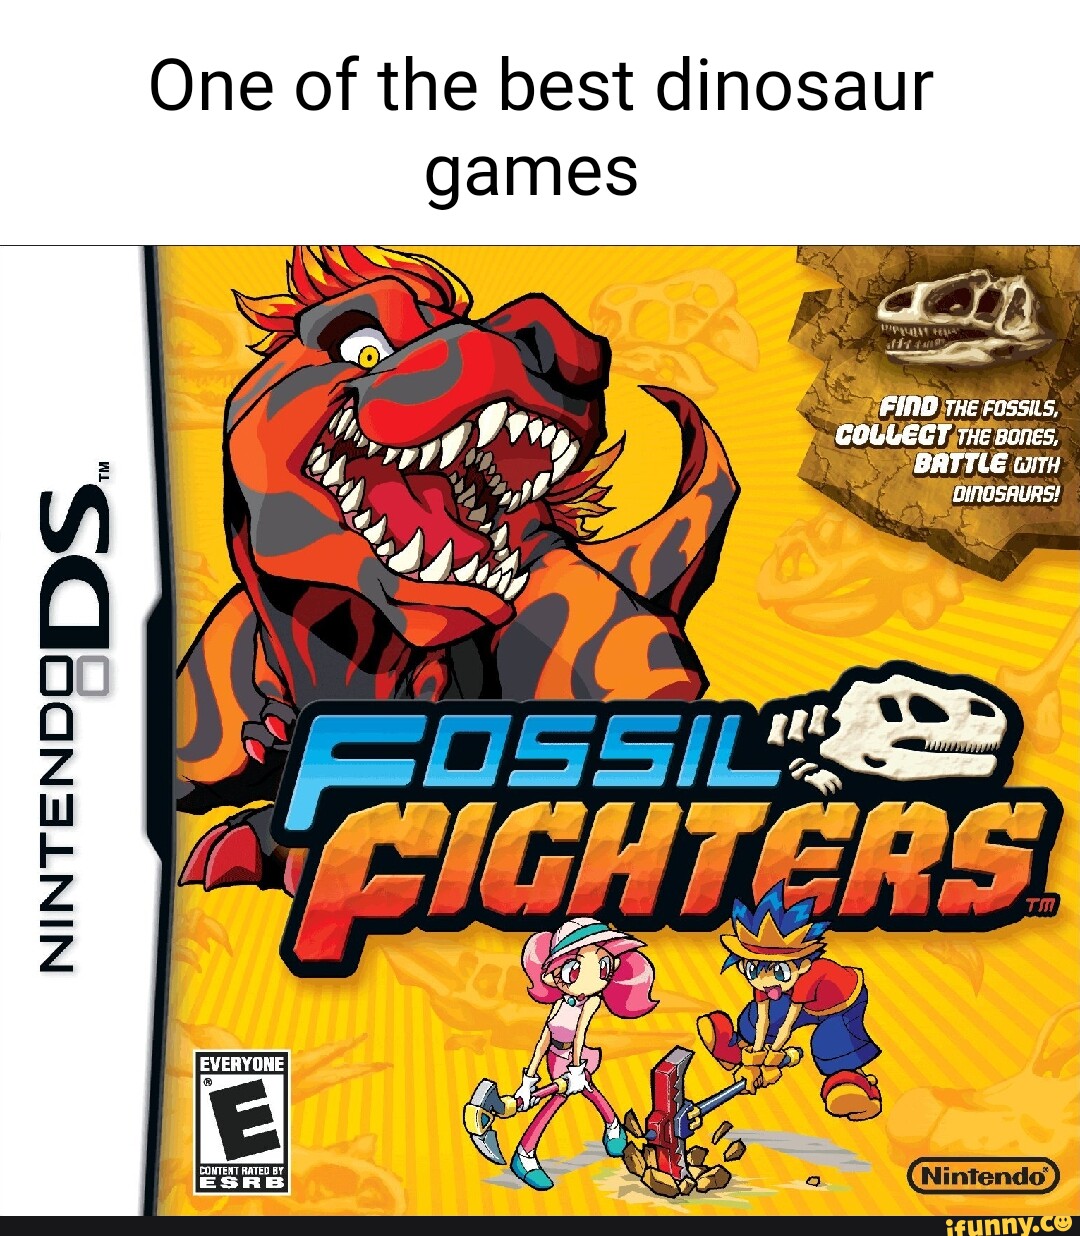 Best Dinosaur Games